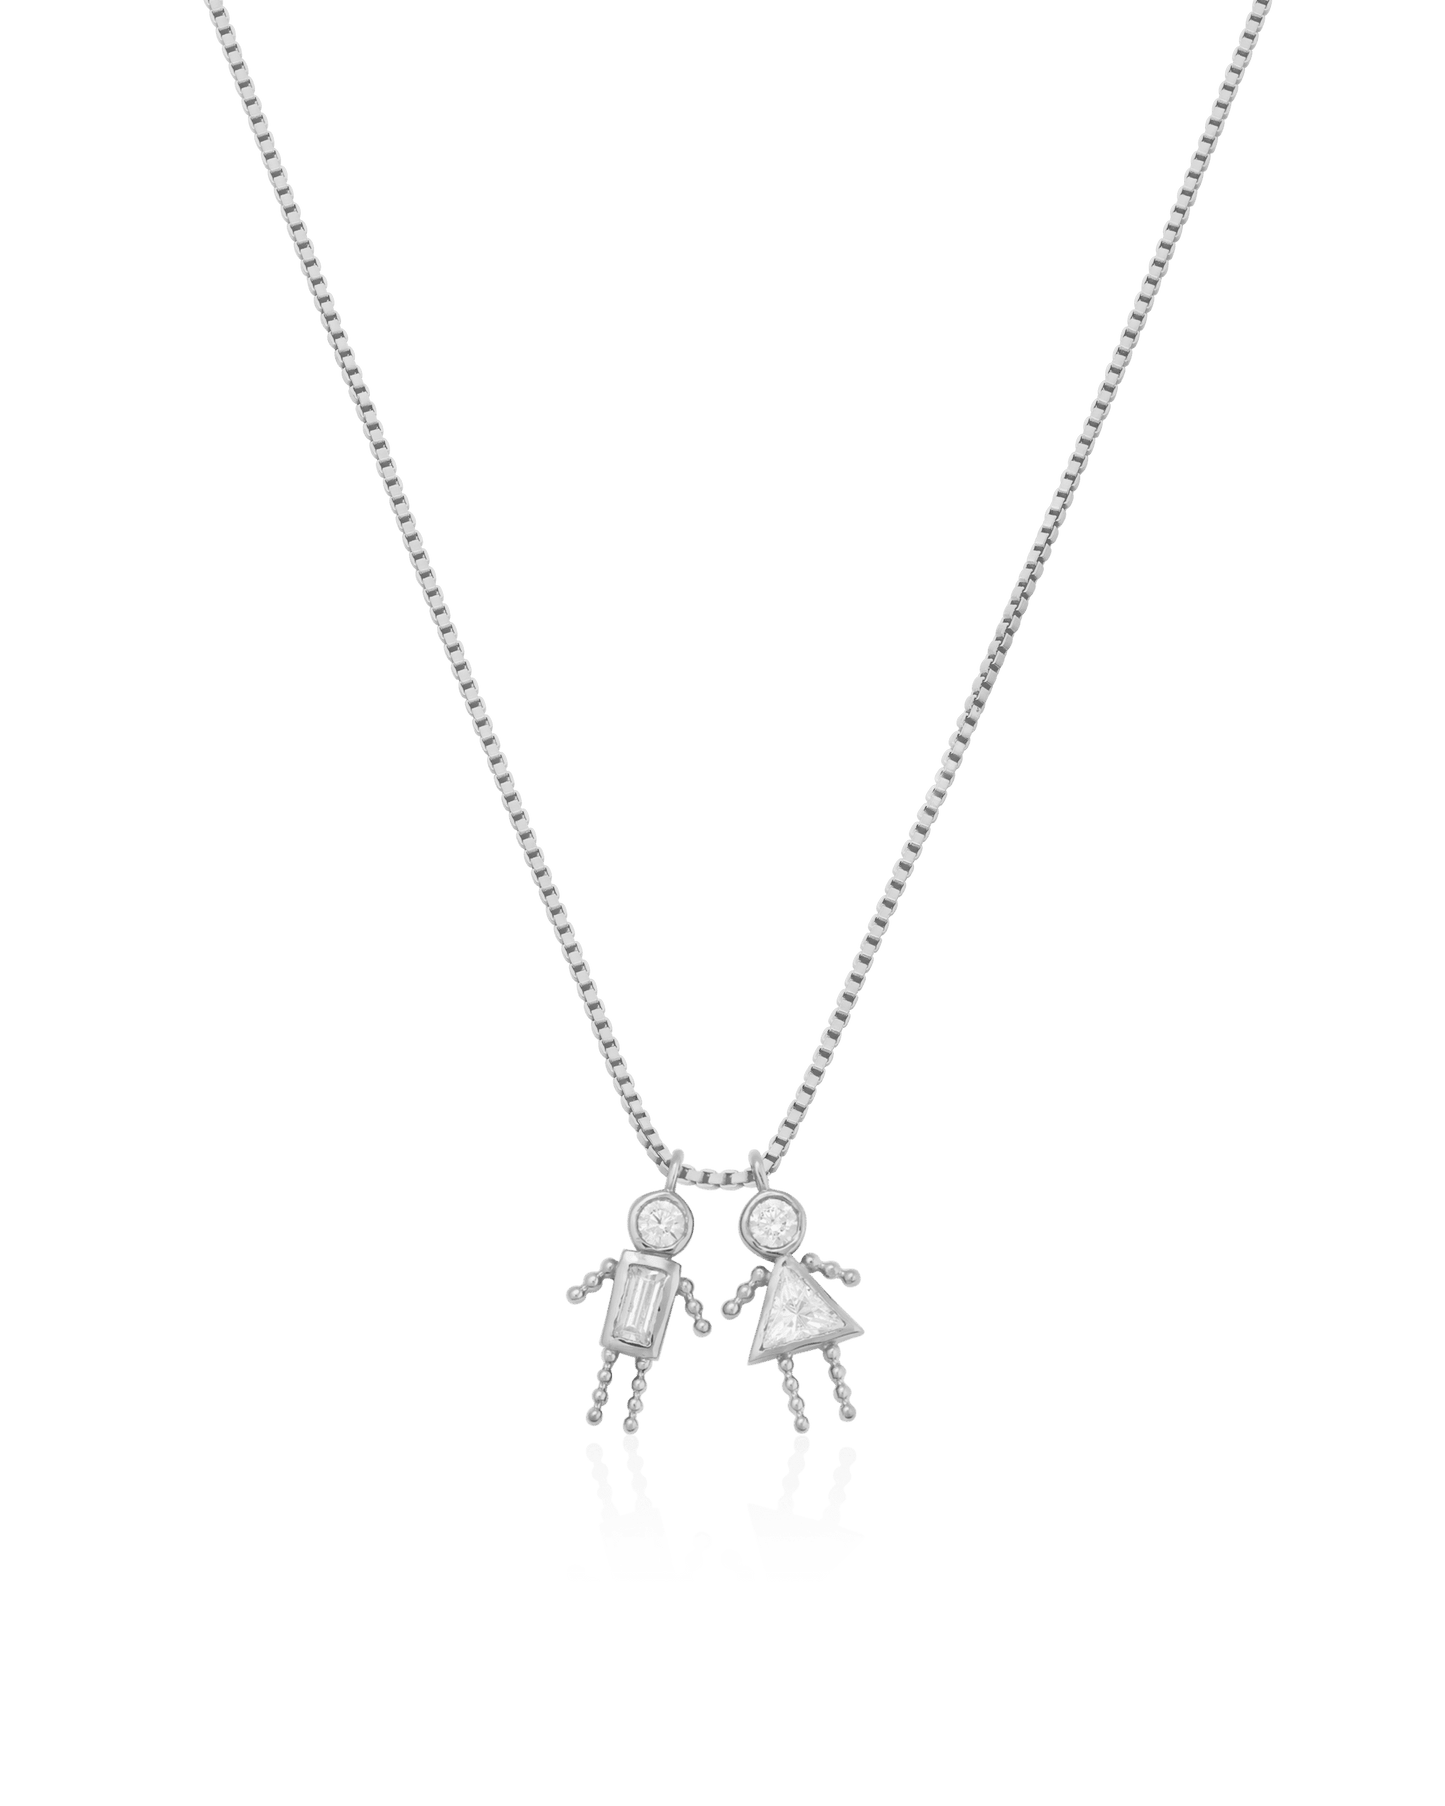 Mini Me Collier - Argent 925 Necklaces magal-dev 1 40cm 